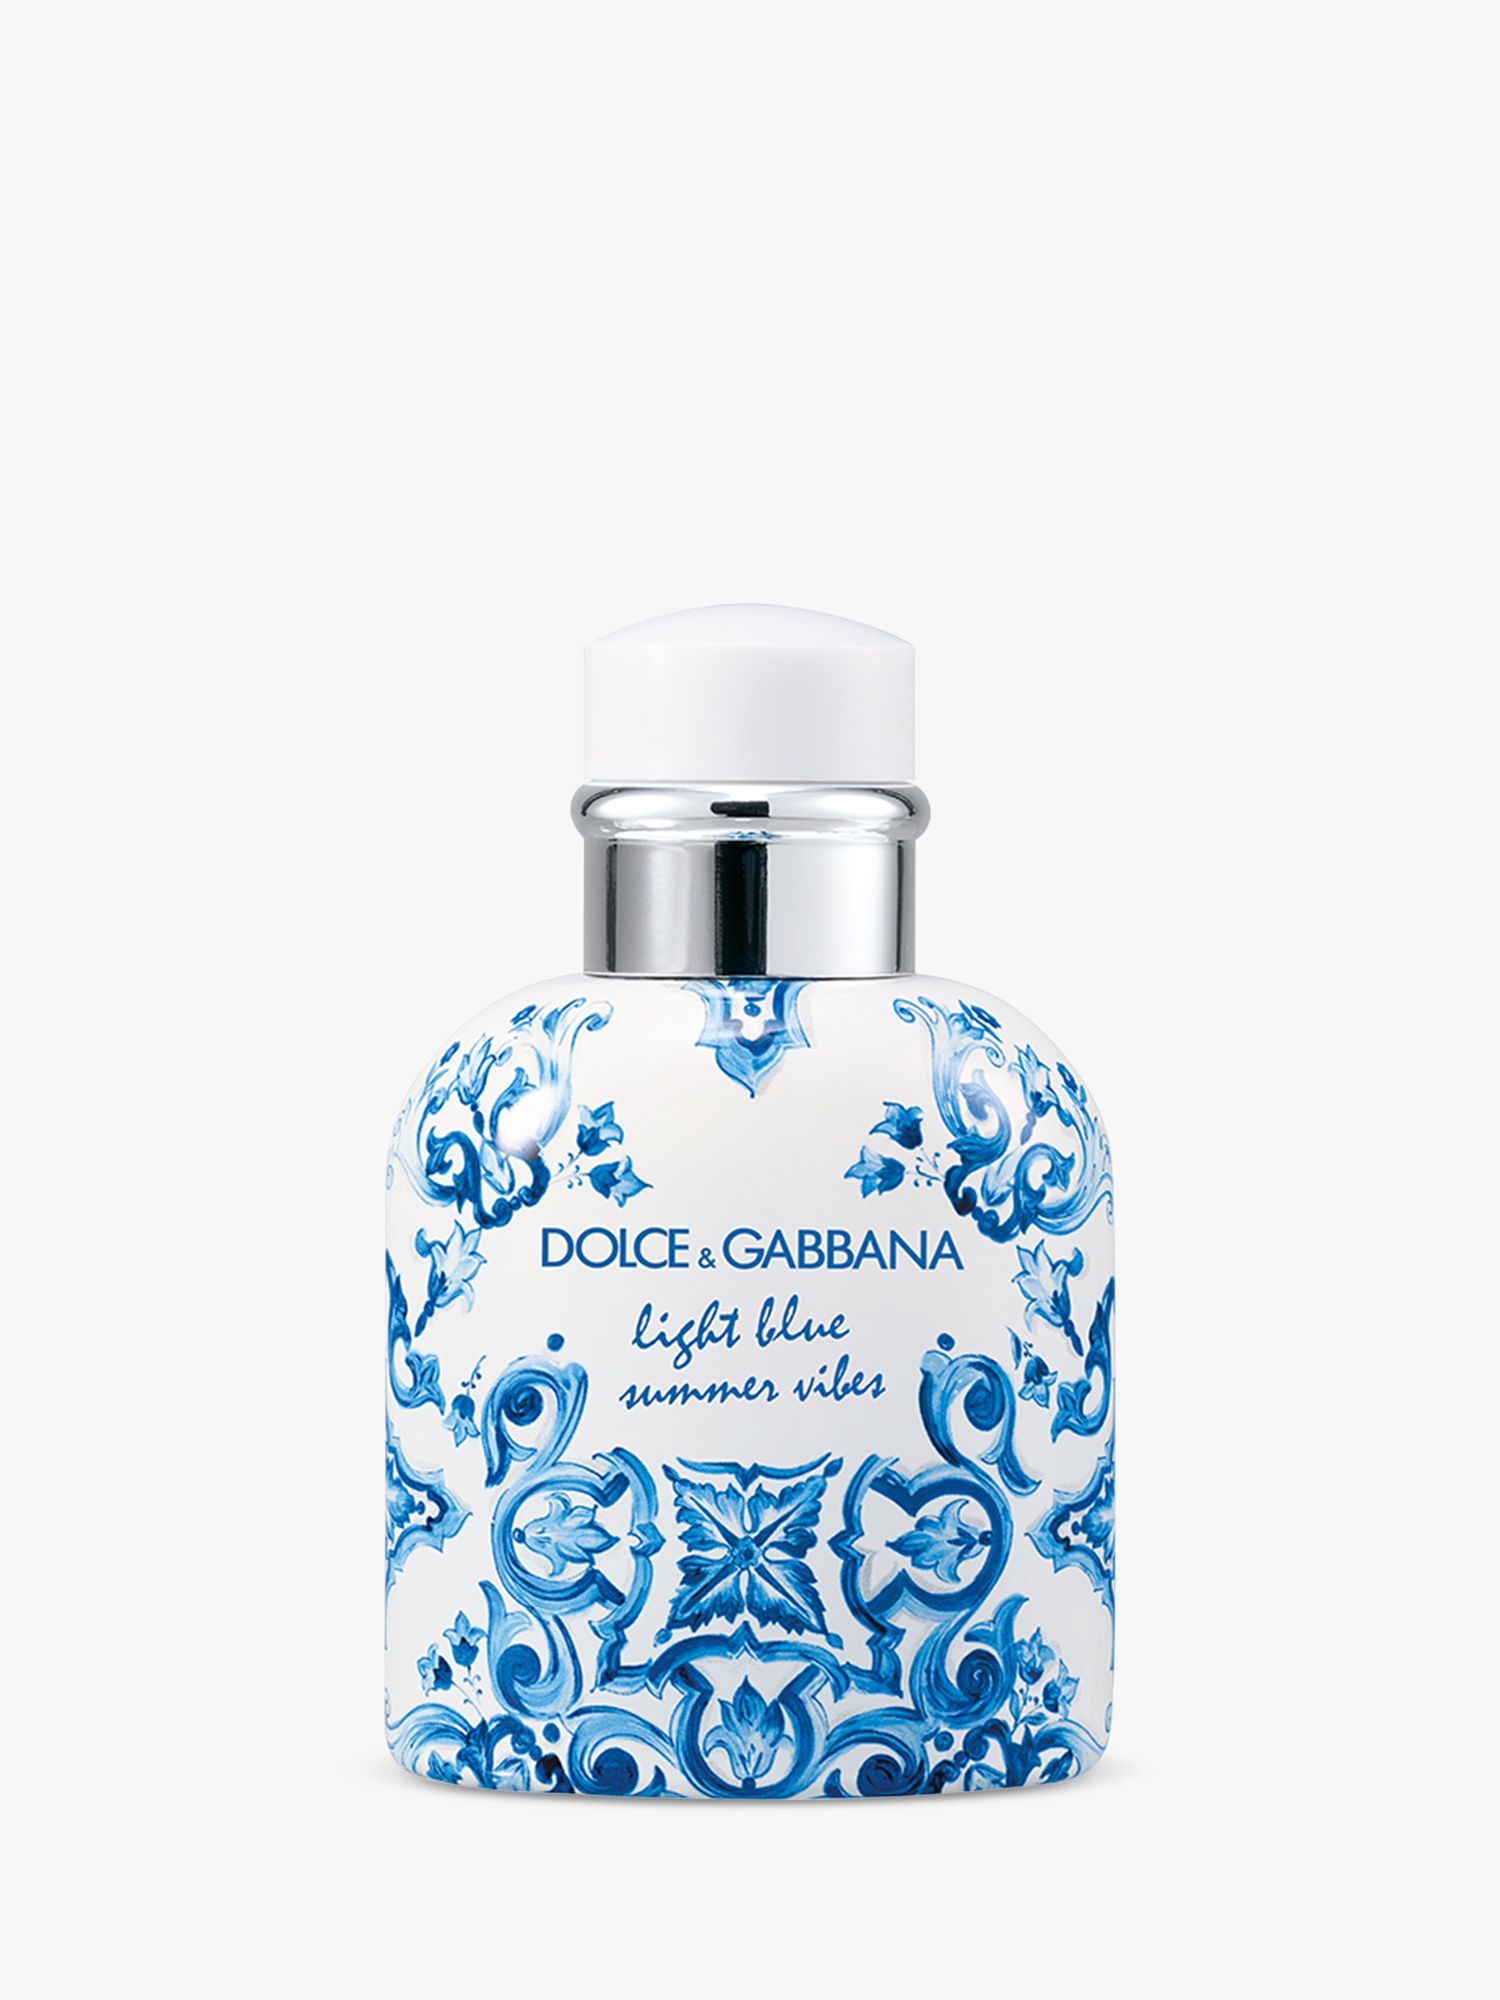 Dolce & Gabbana Light Blue Summer Vibes Pour Homme Eau de Toilette, 75ml at  John Lewis & Partners